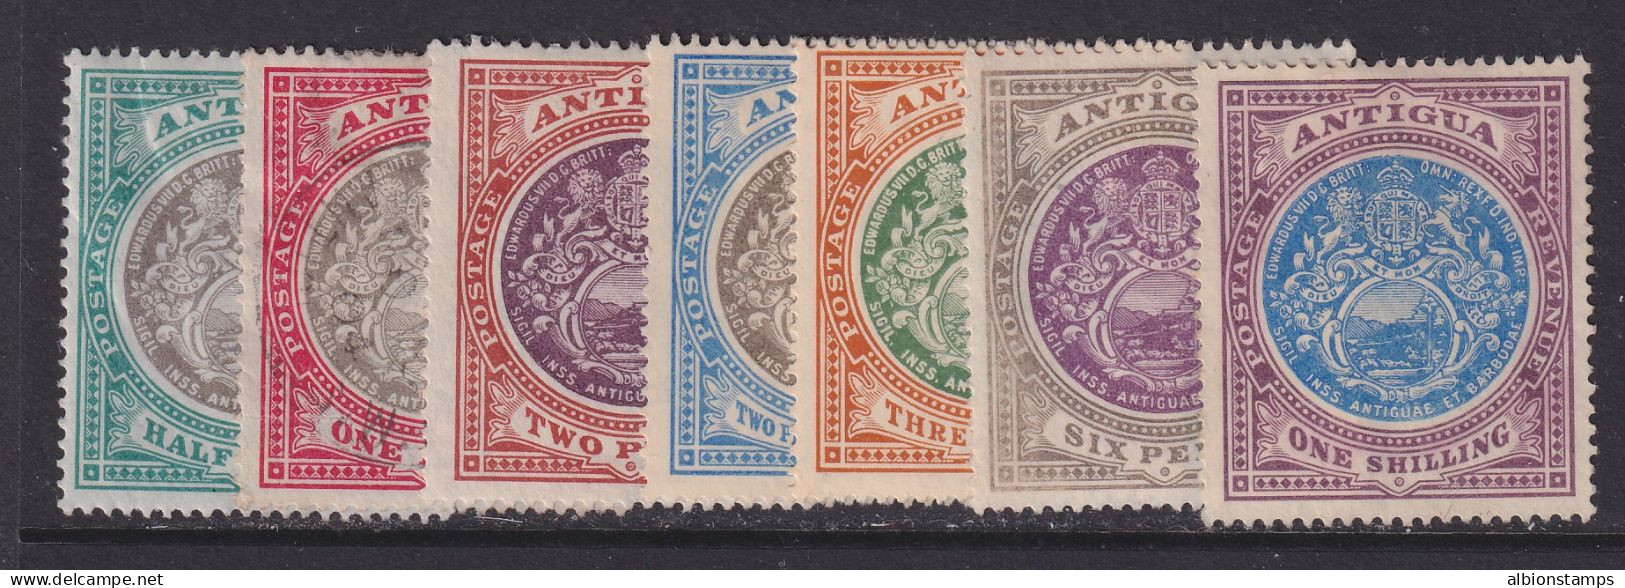 Antigua, Scott 21-27 (SG 31-37), MNG (no Gum), 1p Used - 1858-1960 Colonia Britannica